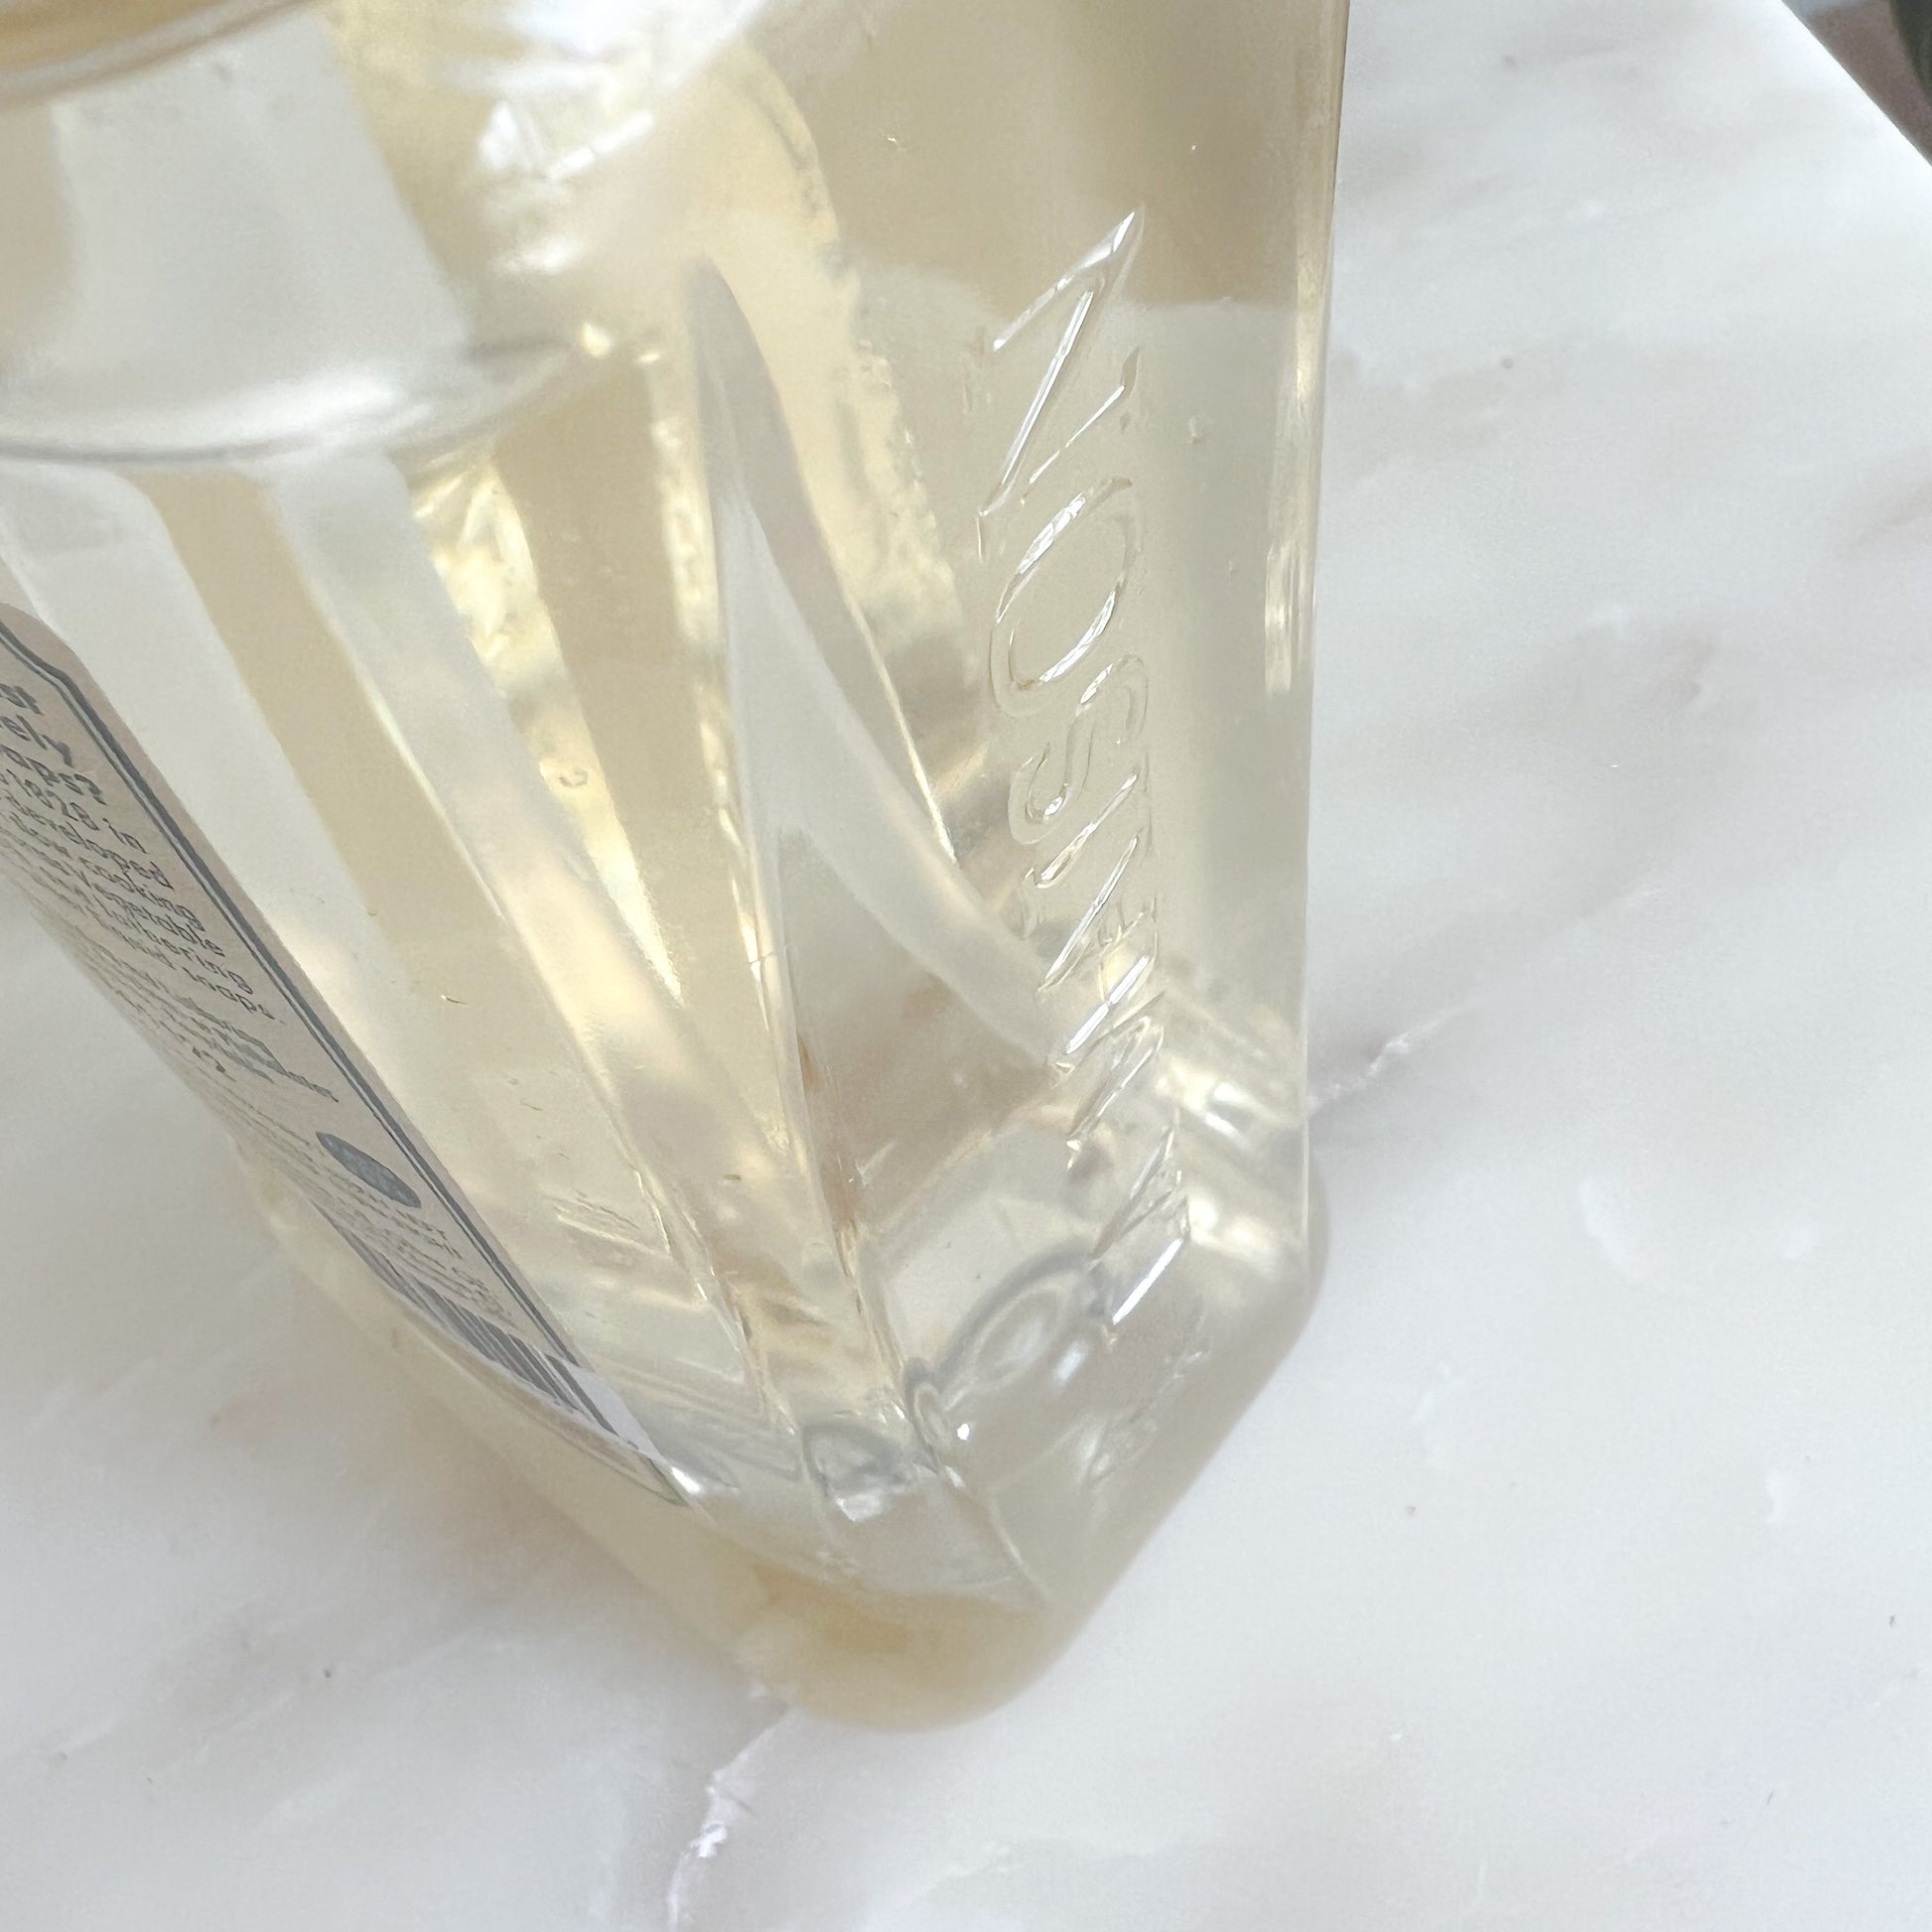 A La Maison de Provence Fresh Sea Salt Liquid Hand and Body Soap - BelleStyle